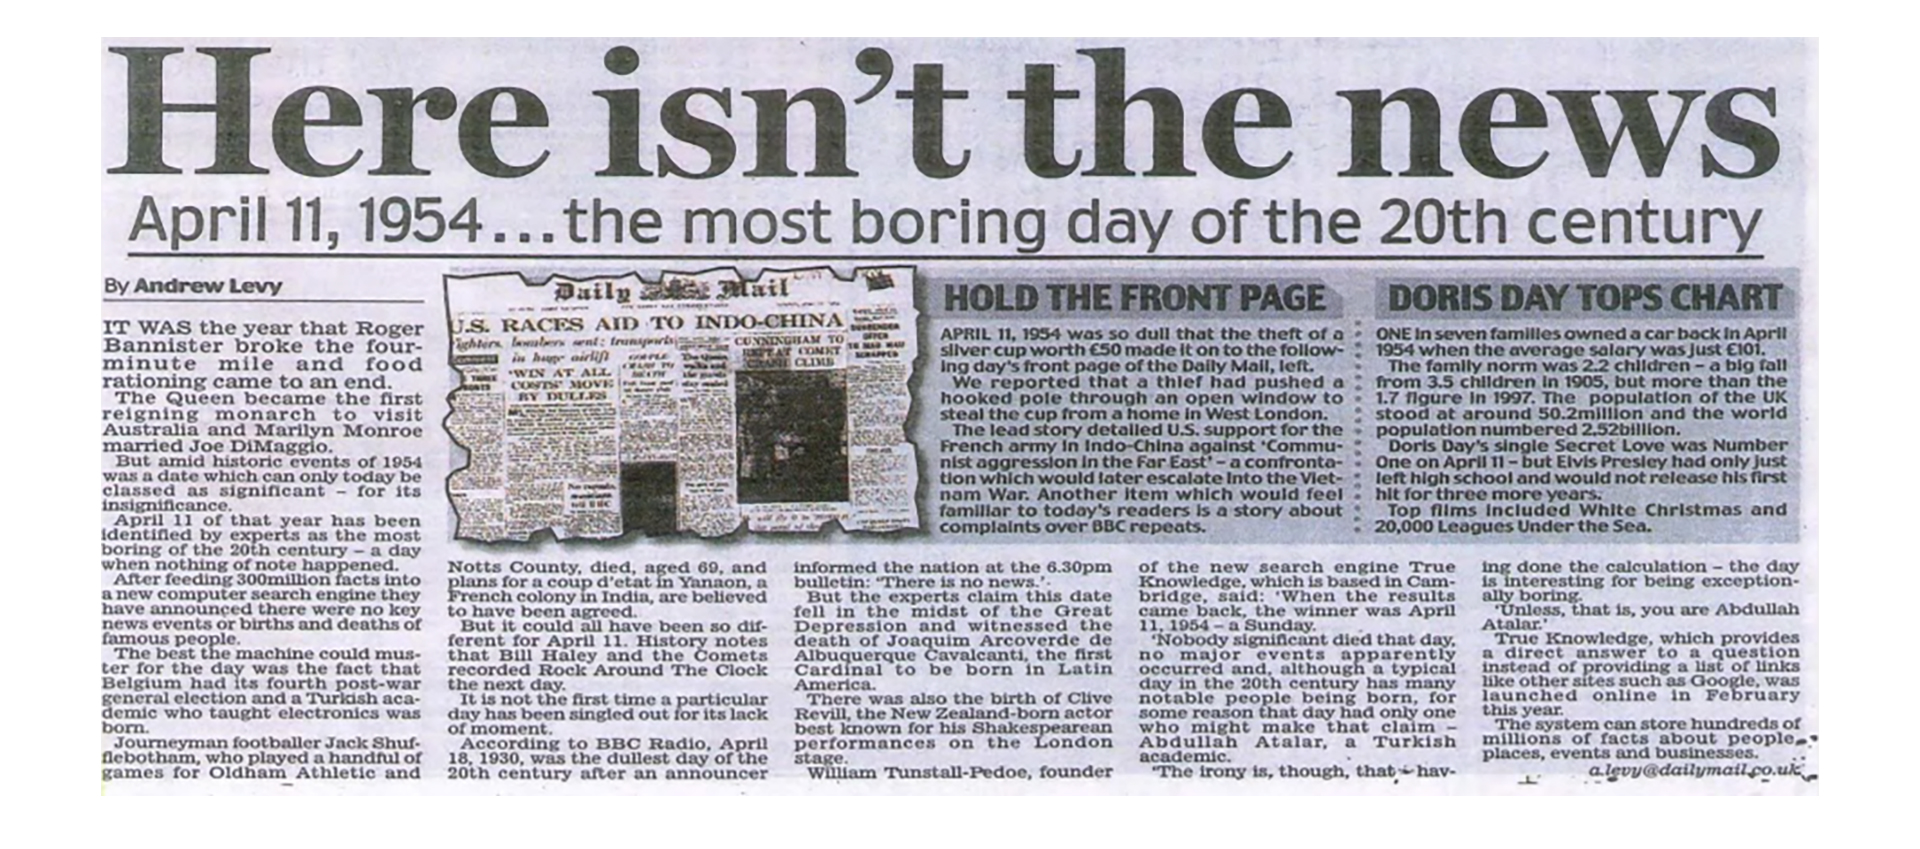 "Aquí no está la noticia" es el título de un artículo del periódico británico Daily Mail, en el que reseña la existencia del día más aburrido del siglo